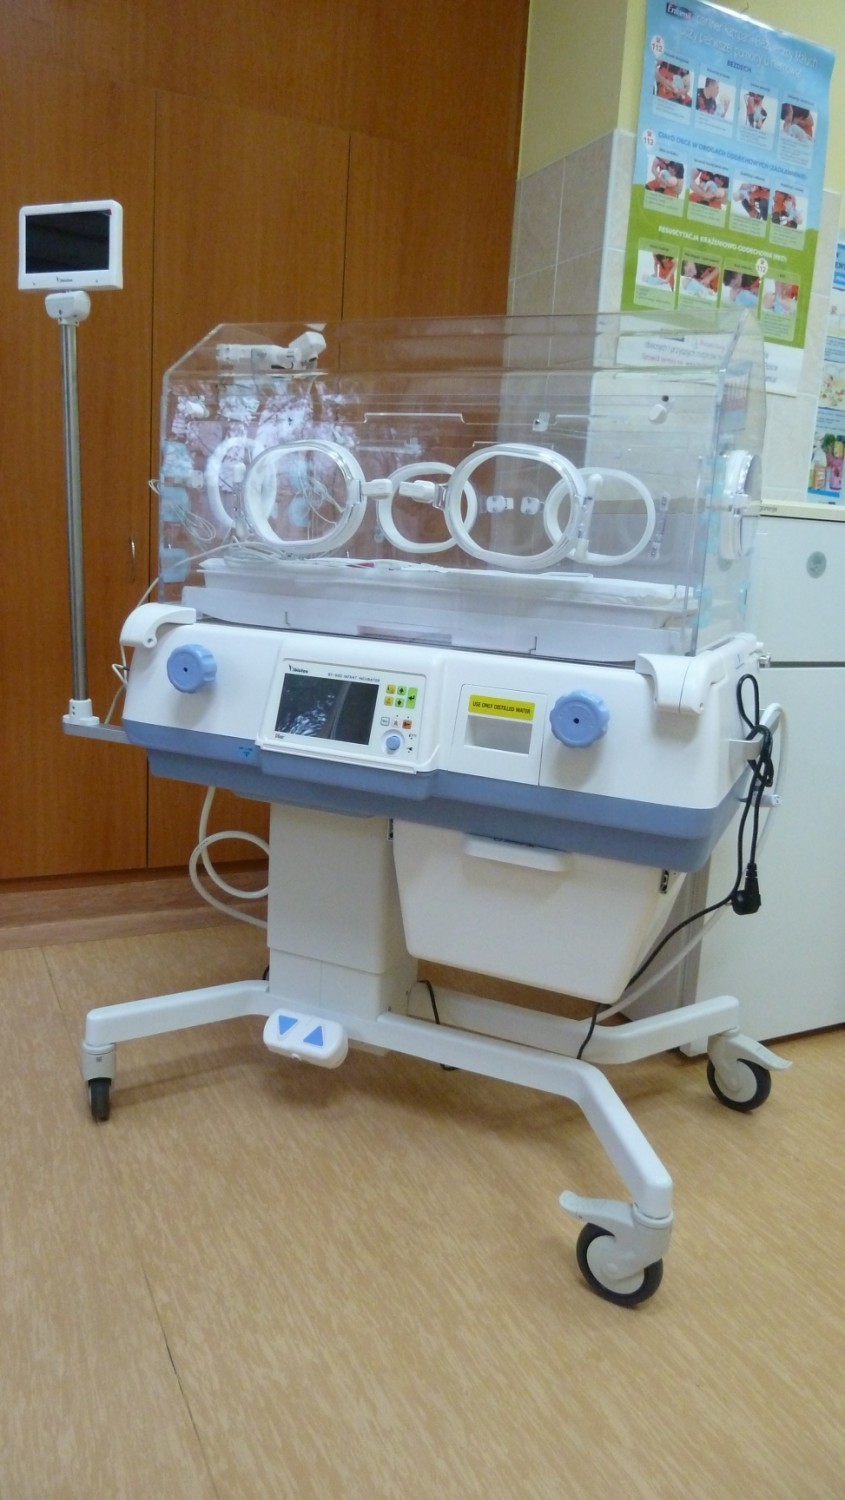 Szpital w Wągrowcu wzbogacił się o nowy inkubator. Jest on przeznaczony dla wcześniaków i noworodków z wagą poniżej 2 kg 